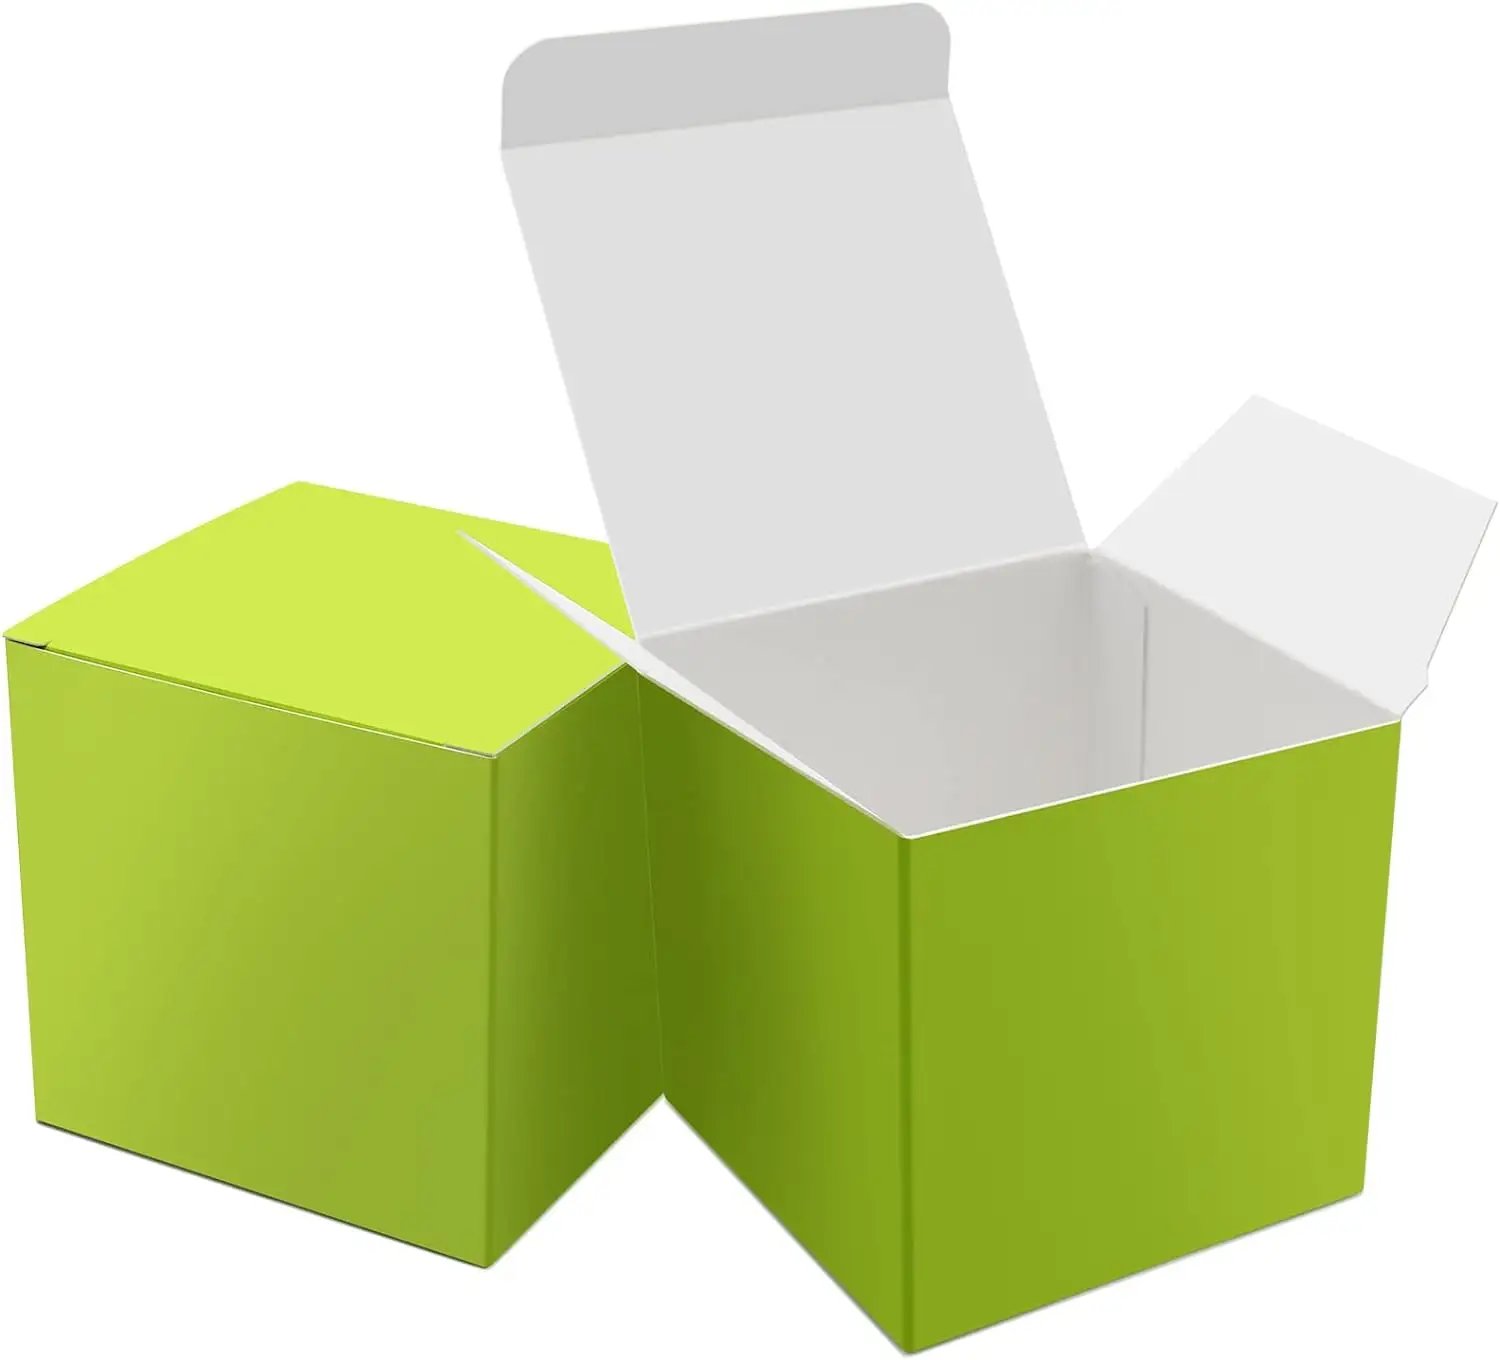 กล่องใส่ลูกกวาดขนาดเล็ก3x3x3นิ้วพร้อมฝาปิดกล่องของขวัญกระดาษสีเขียวแบบกำหนดเอง